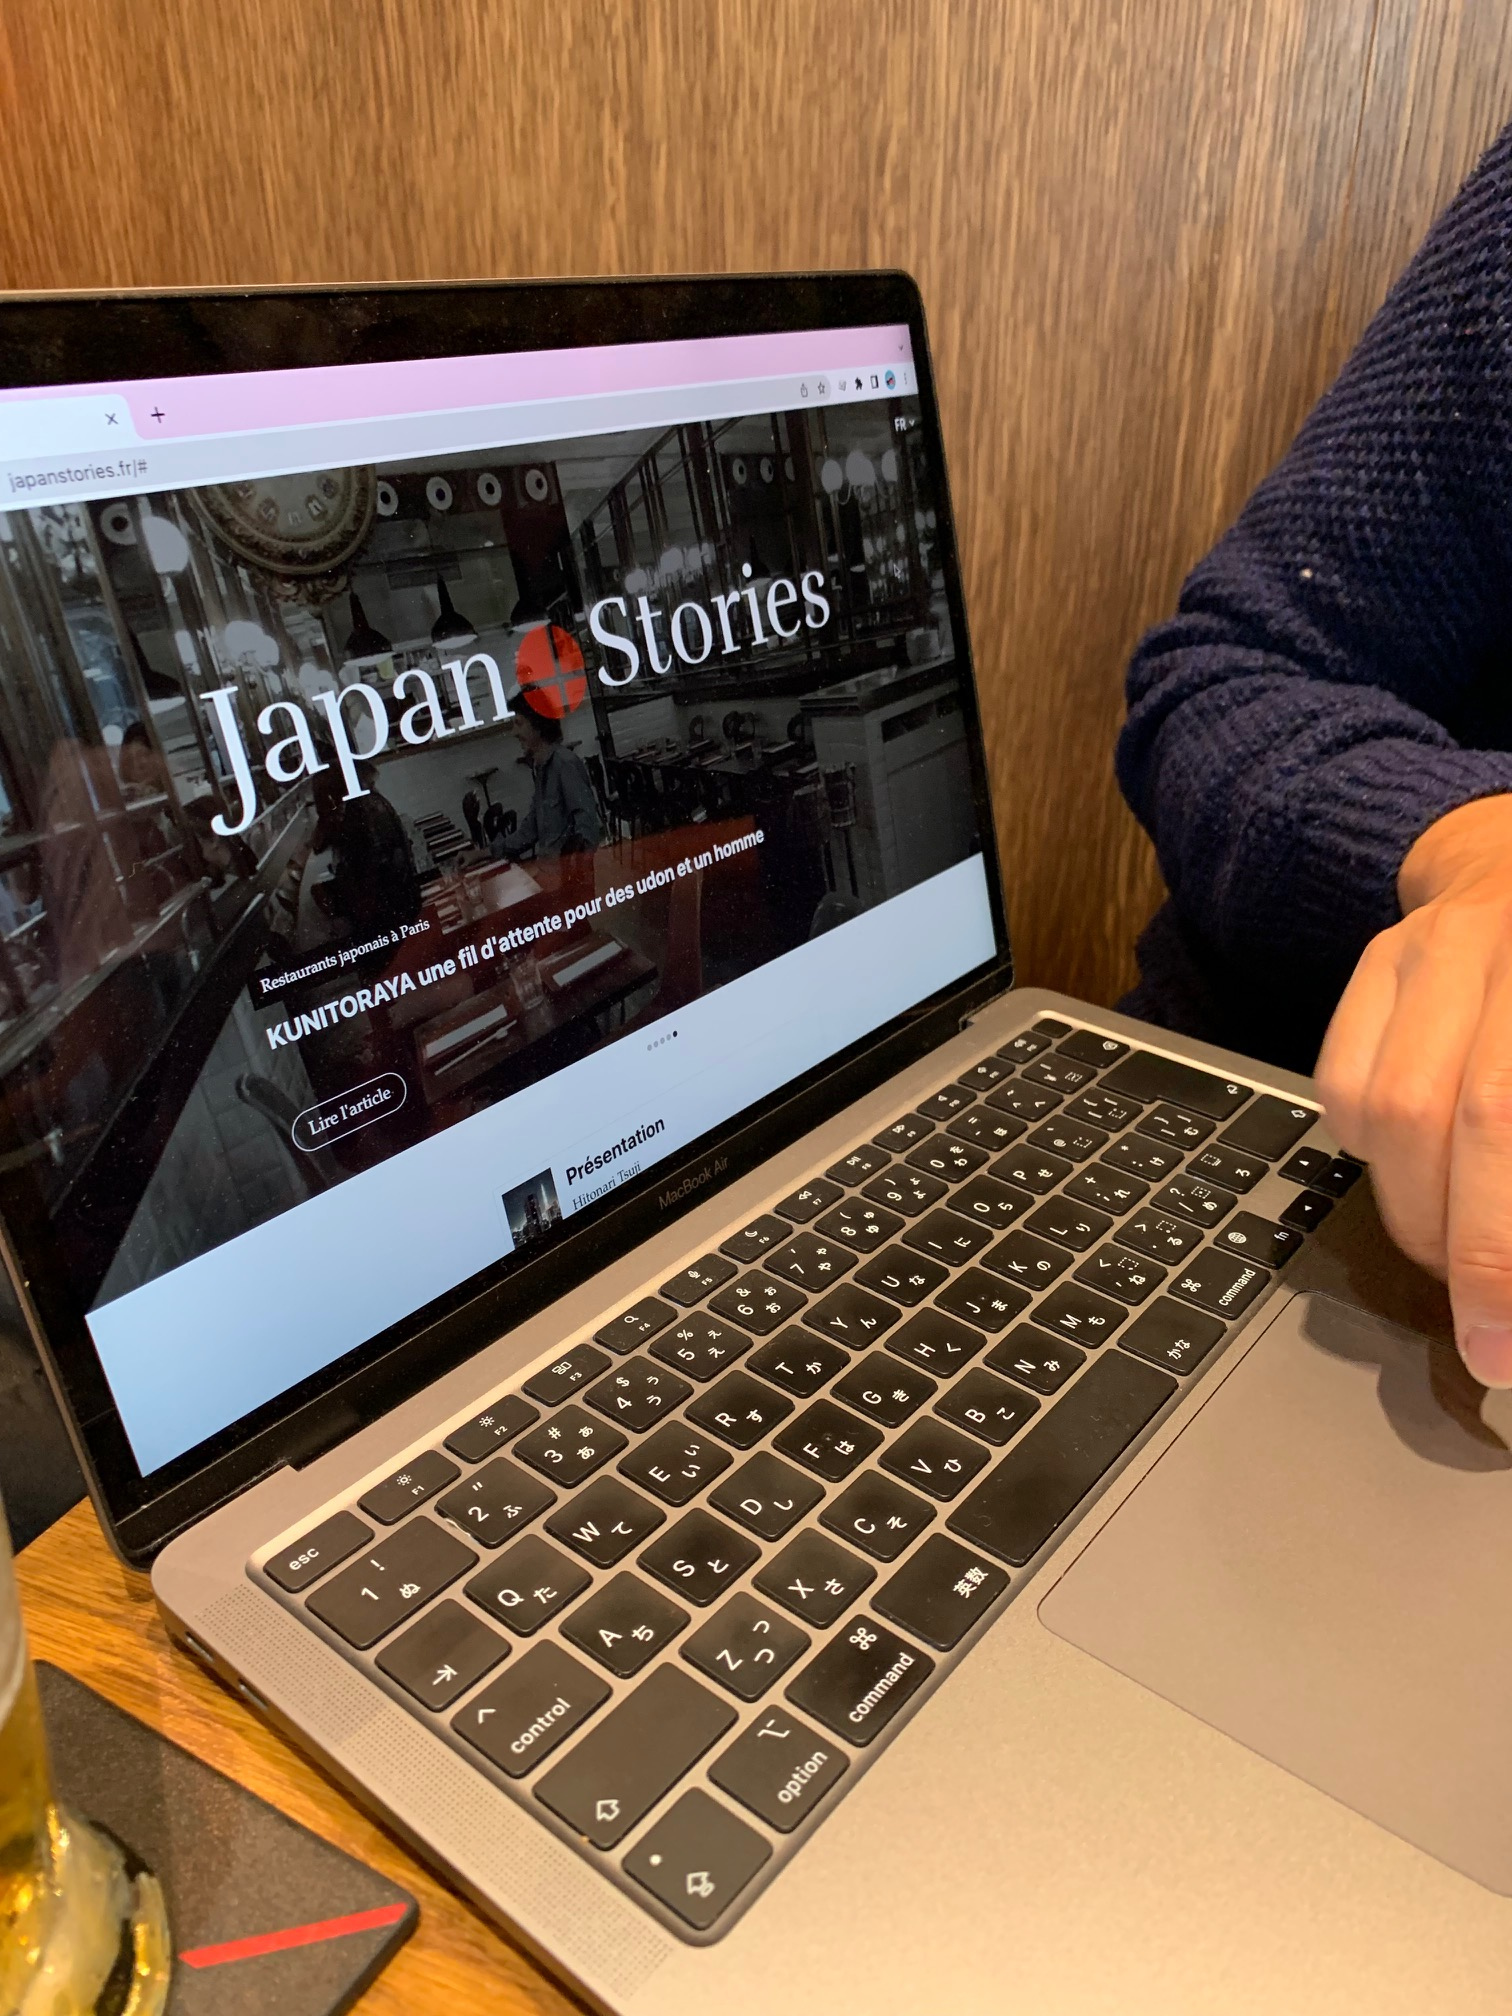 創刊日記「日本を世界へ。ついに、今日、創刊しました。Japan Stories！！！」